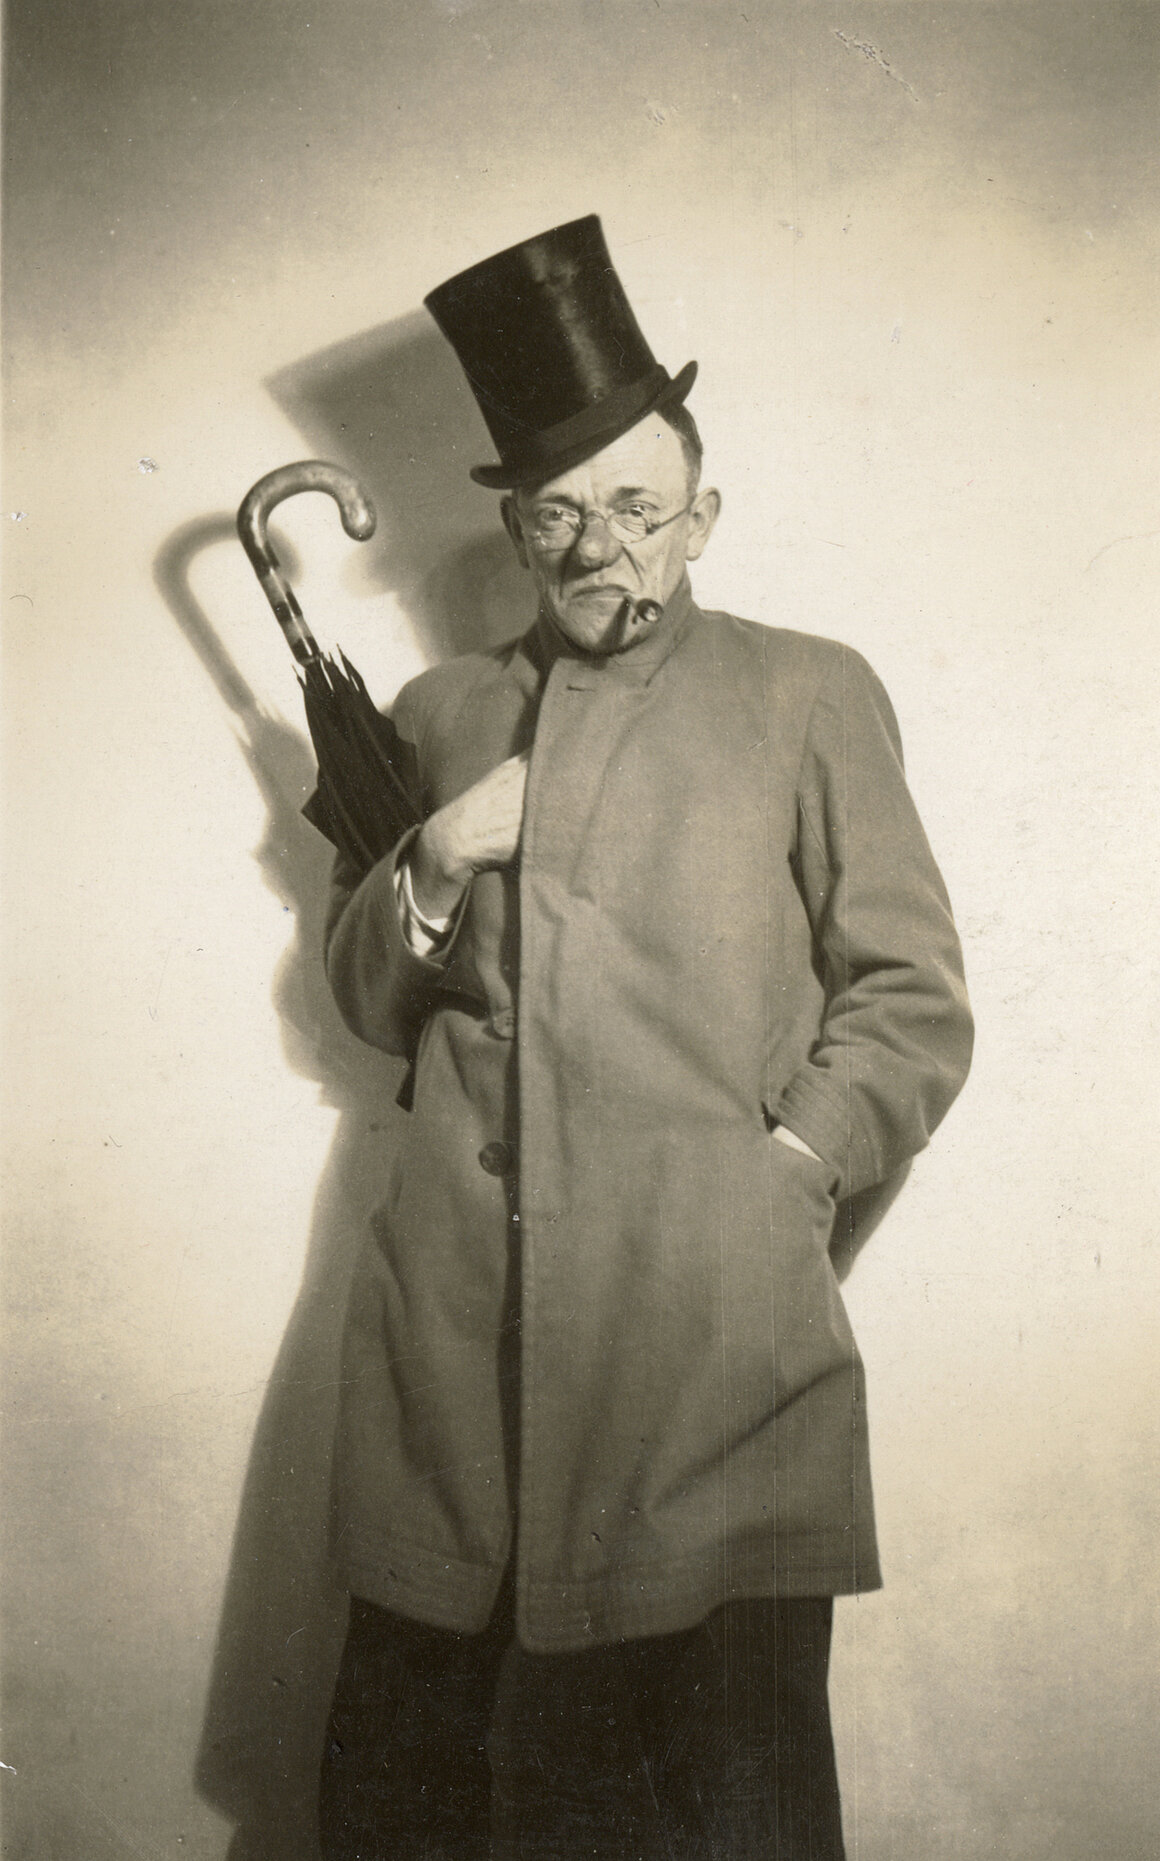 Karl Valentin mit Zylinder und Schirm, um 1930